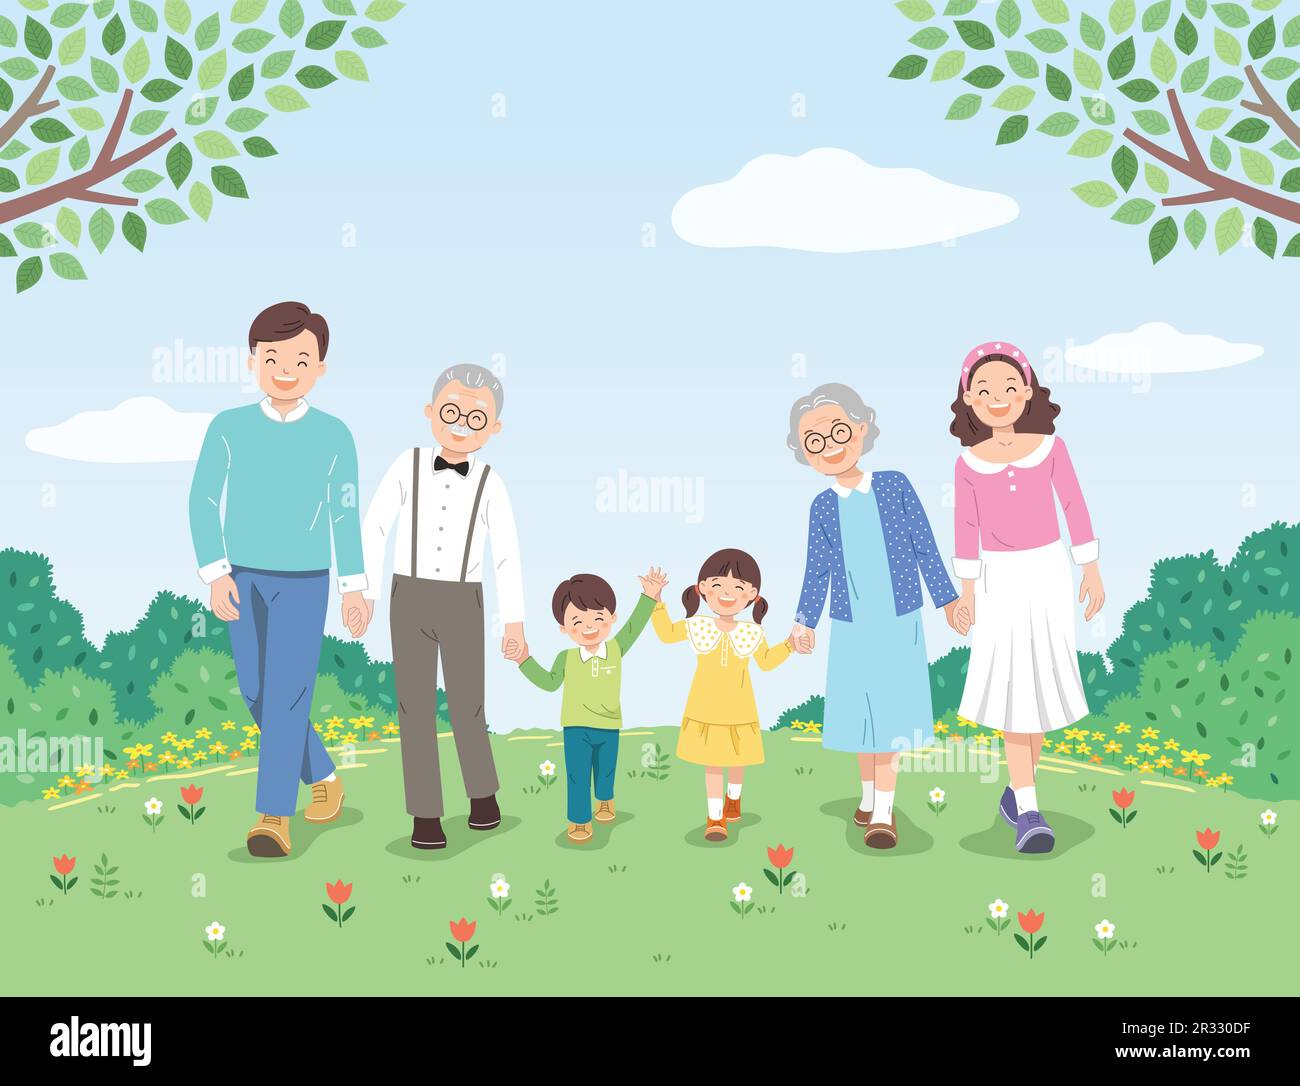 Famille heureuse et fond de nature. Le père, la mère, le grand-père, la grand-mère et les enfants marchent main dans la main. Illustration de Vecteur